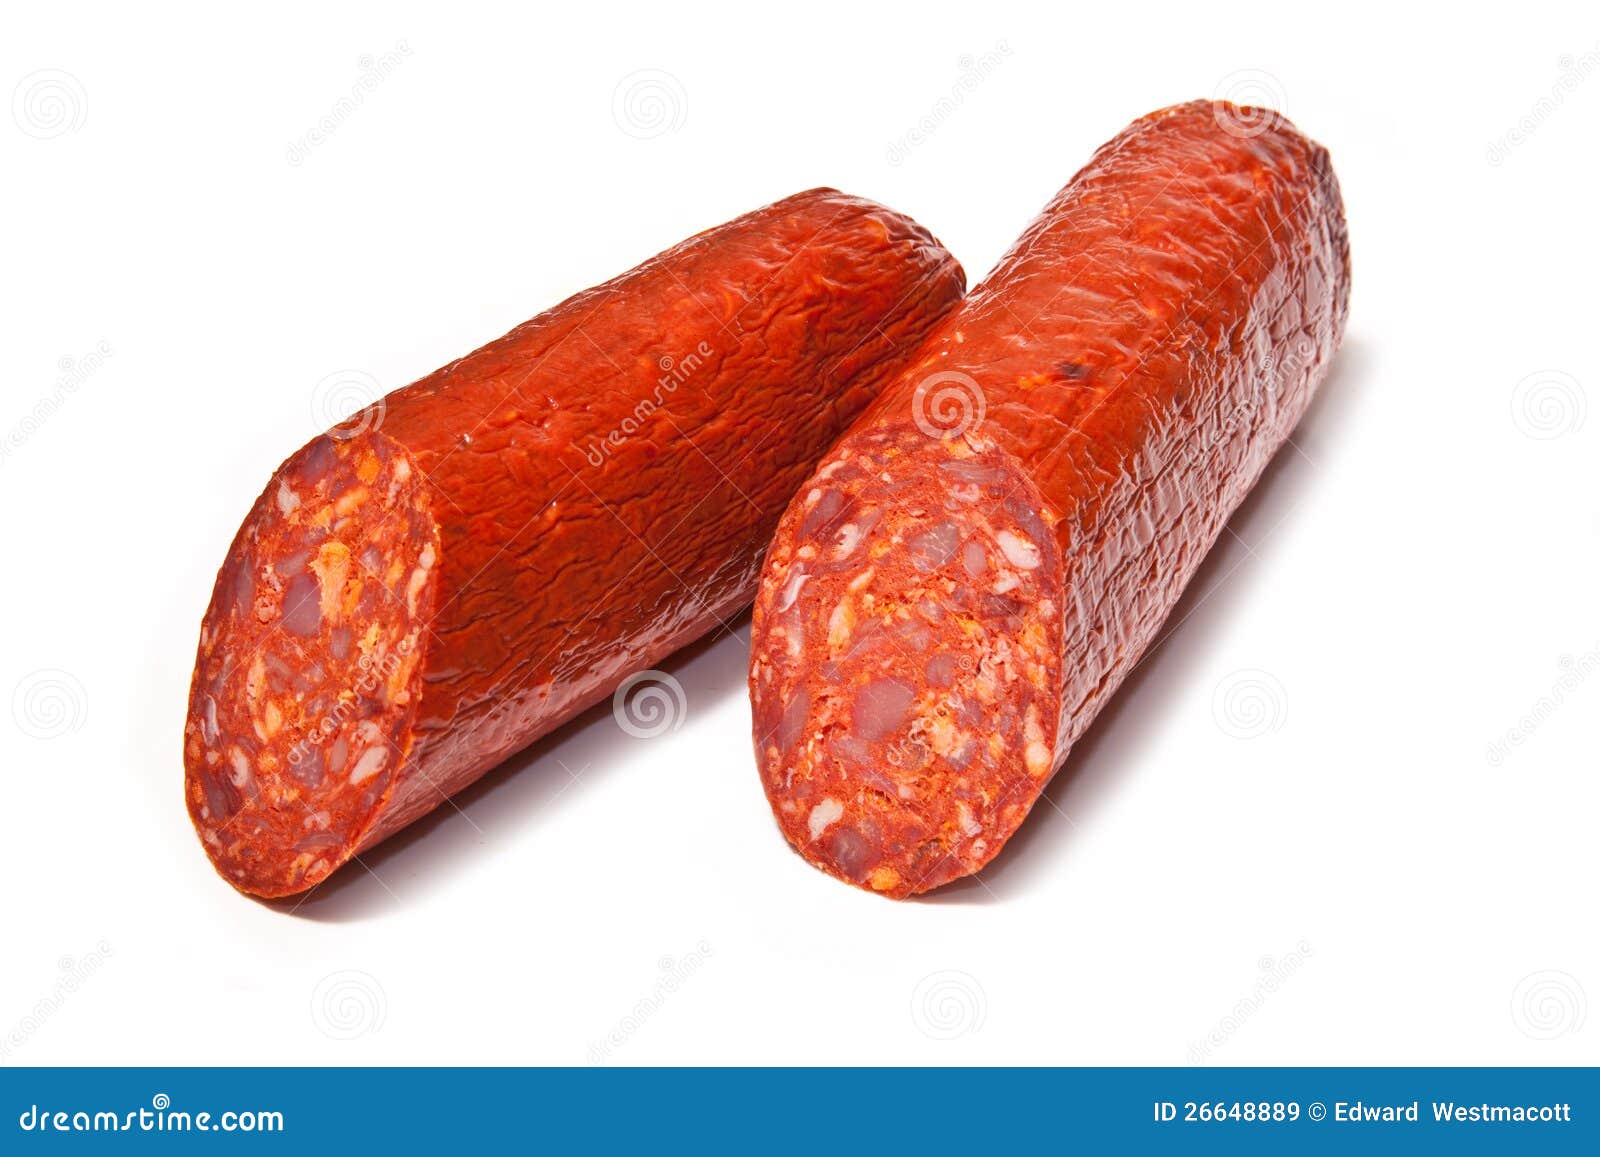 halved chorizo sausage